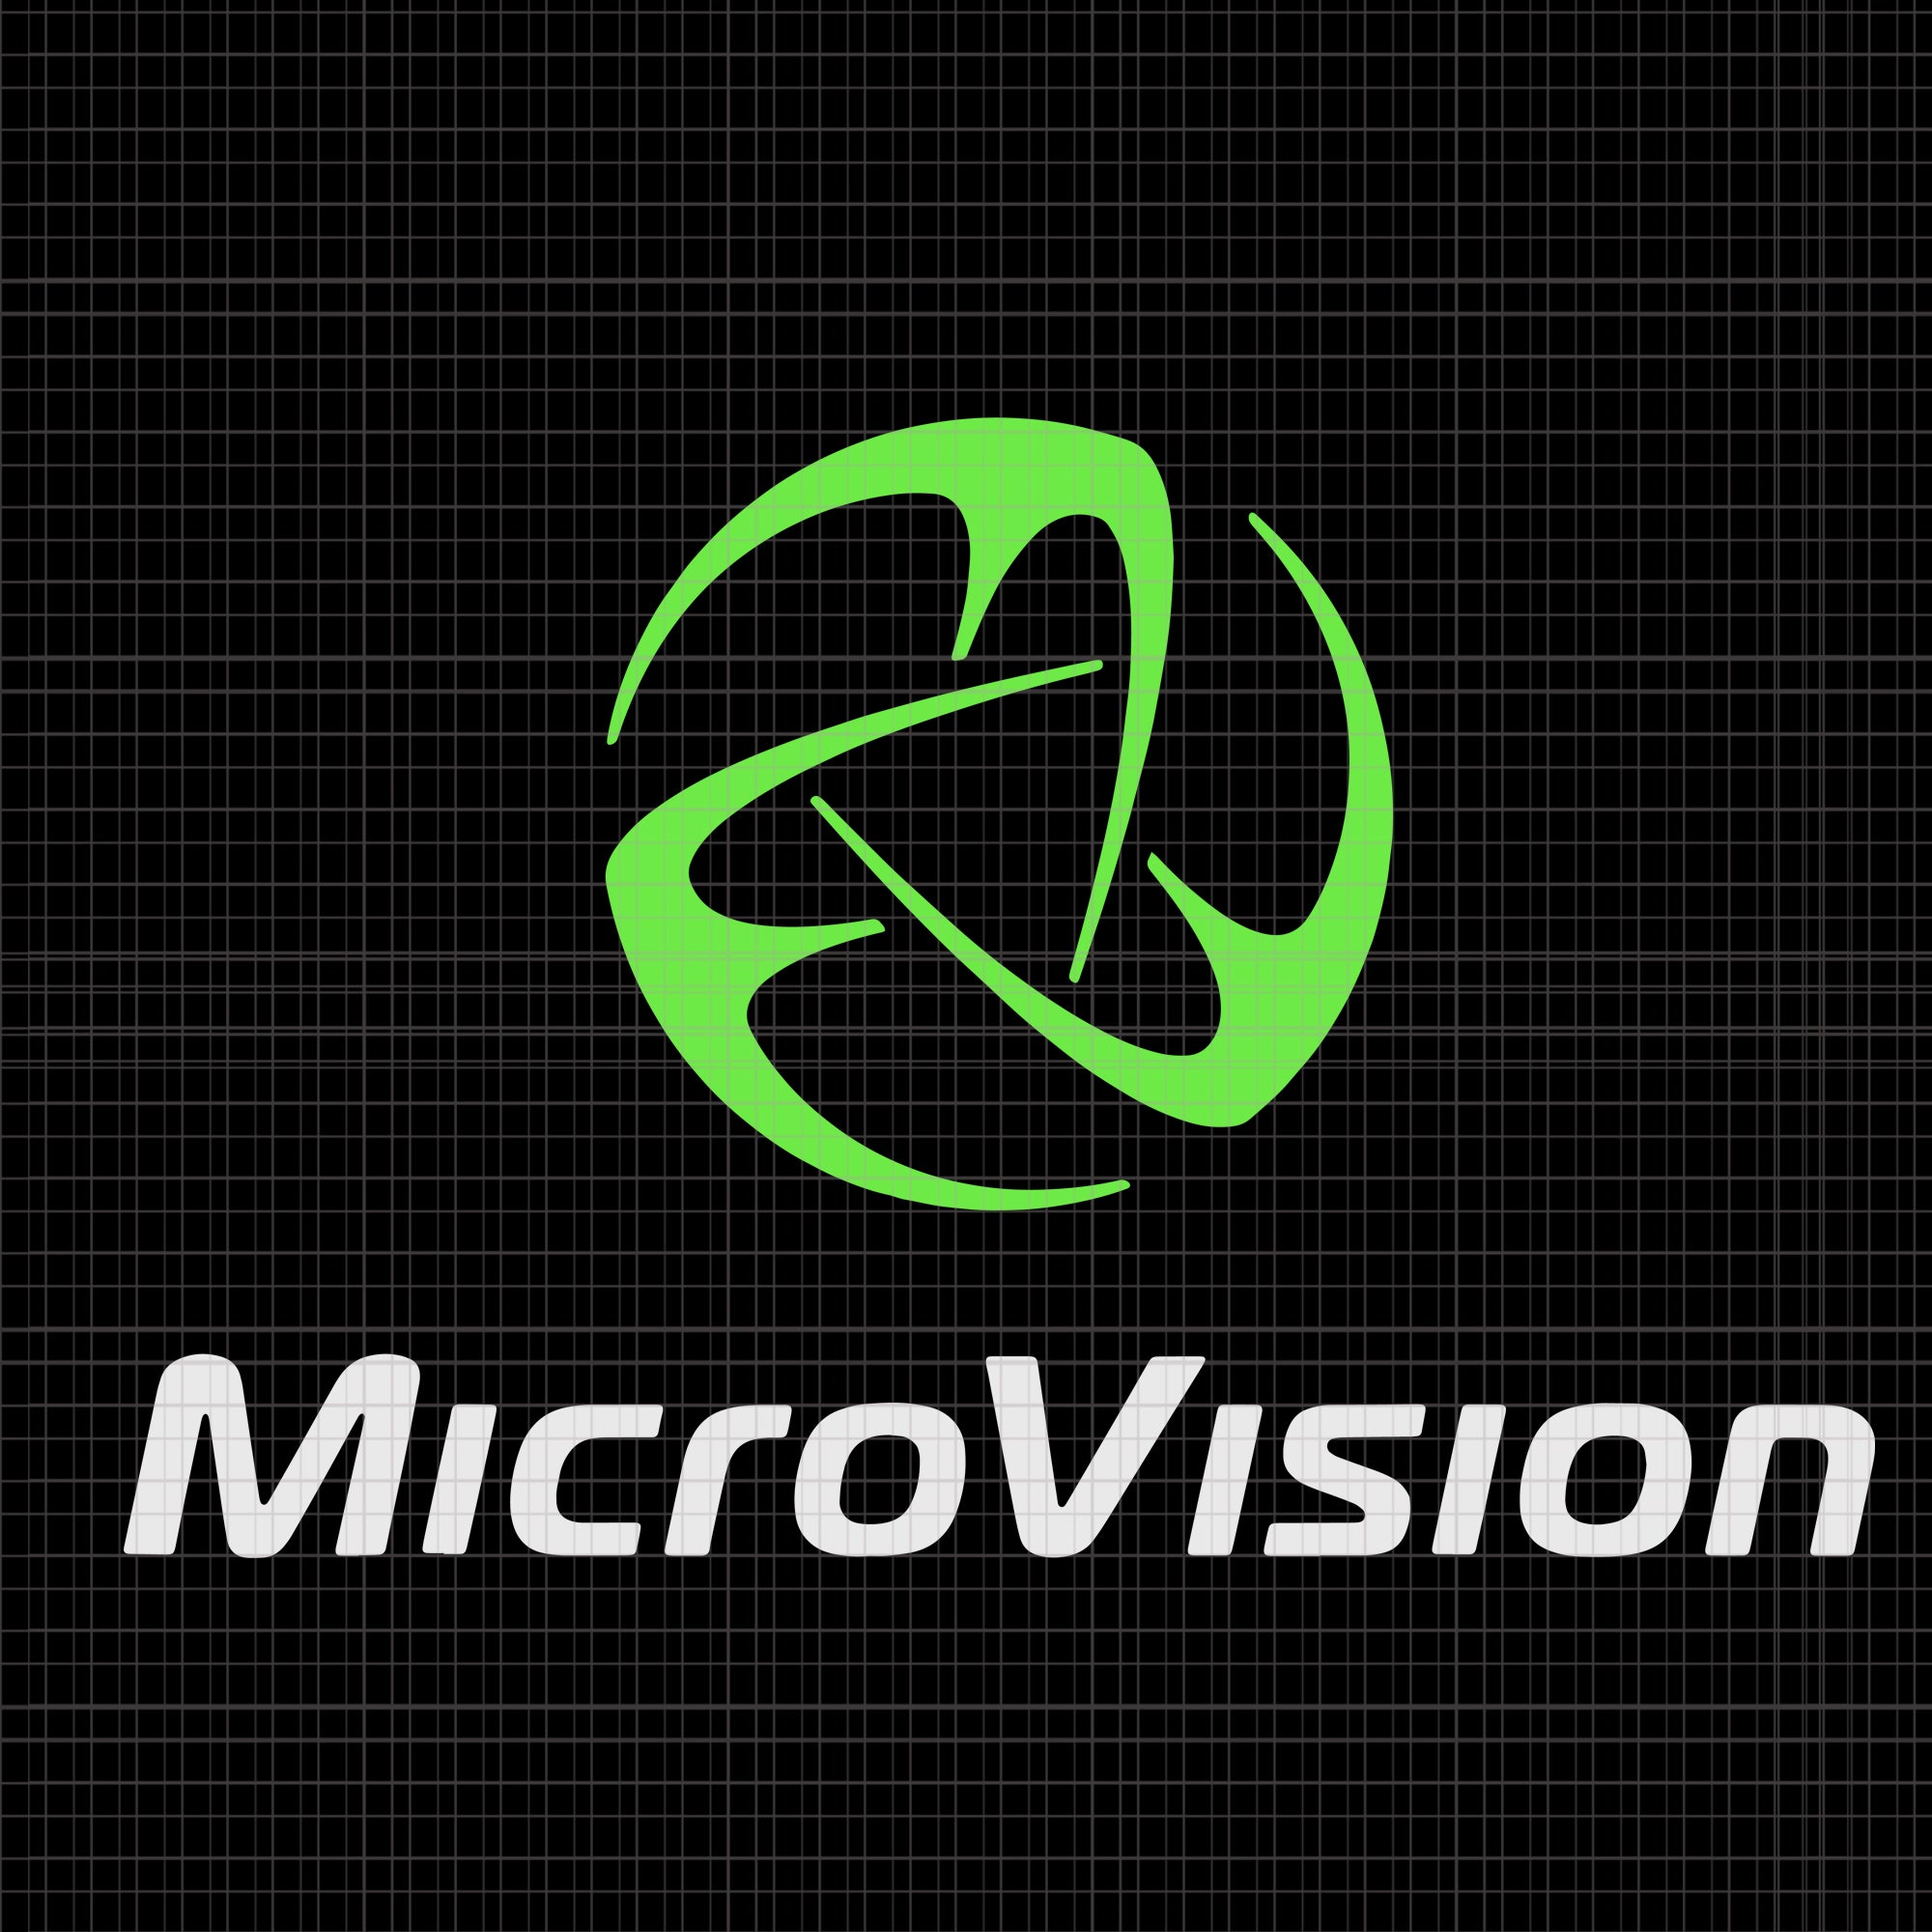 Microvision svg, Microvision png, Microvision vector, Microvision design tshirt, Microvision shirt